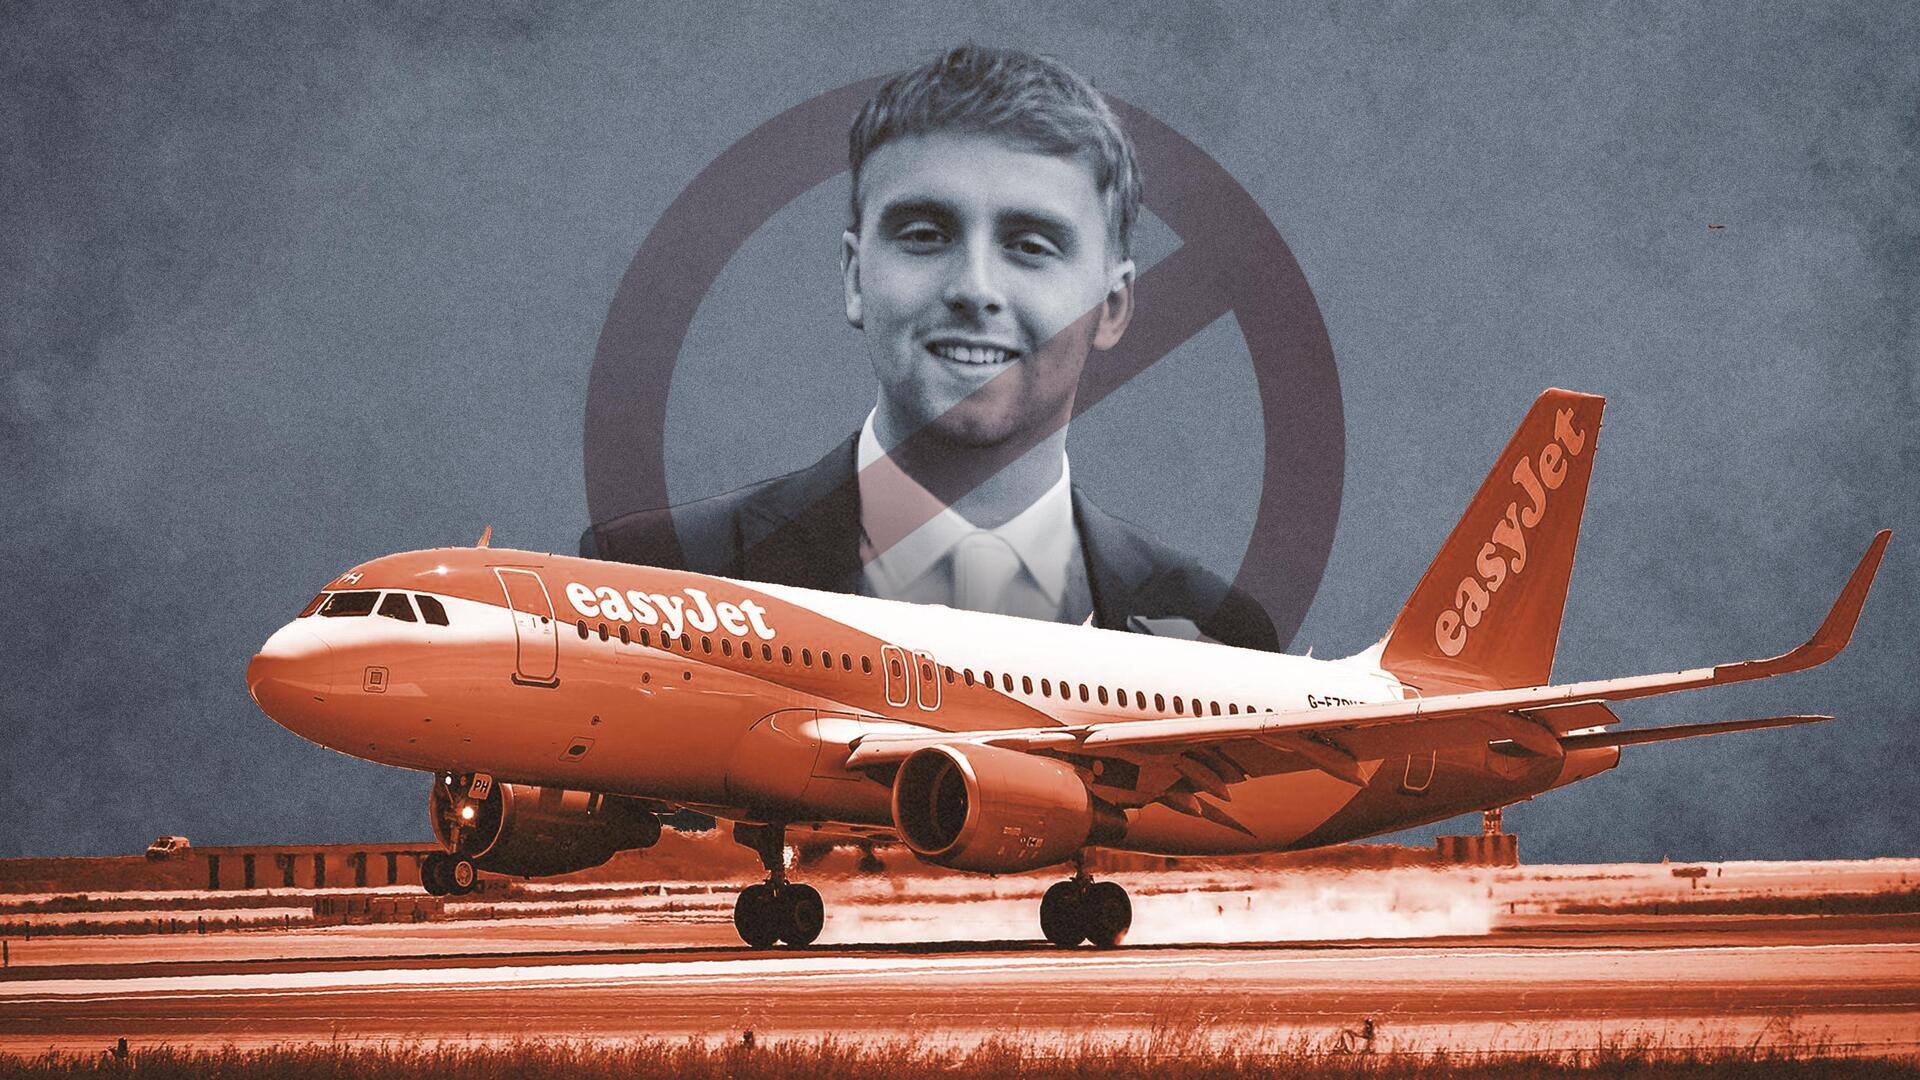 इंग्लैंड: नाम की गलतफहमी में एयरलाइन कंपनी ने युवक पर लगाया 10 साल का प्रतिबंध